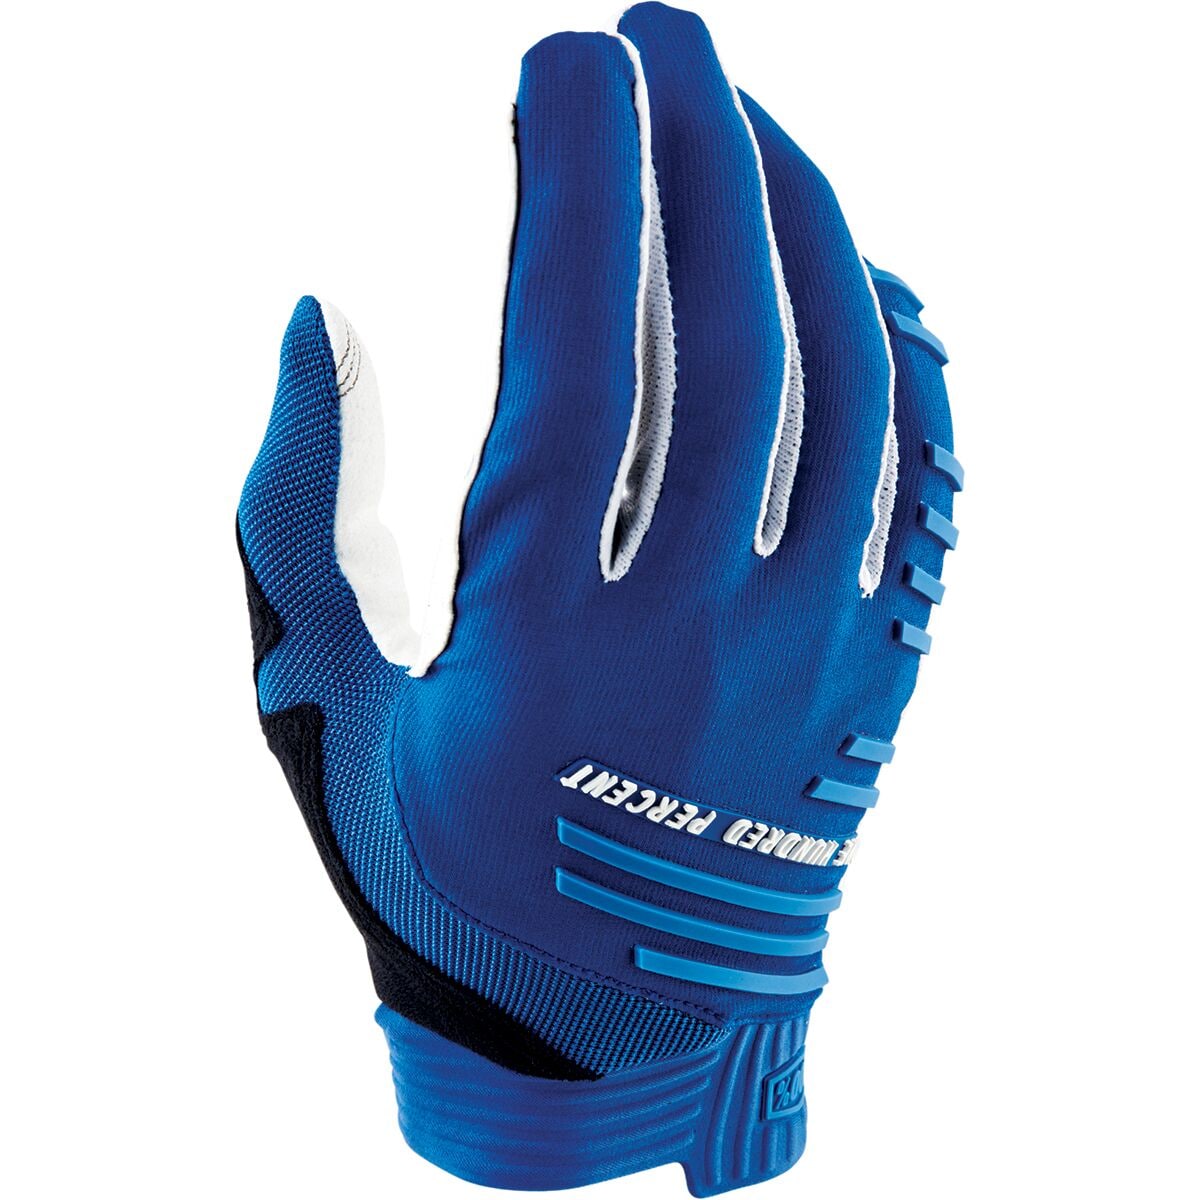 100% R-Core Glove - Men's Slate Blue2, L